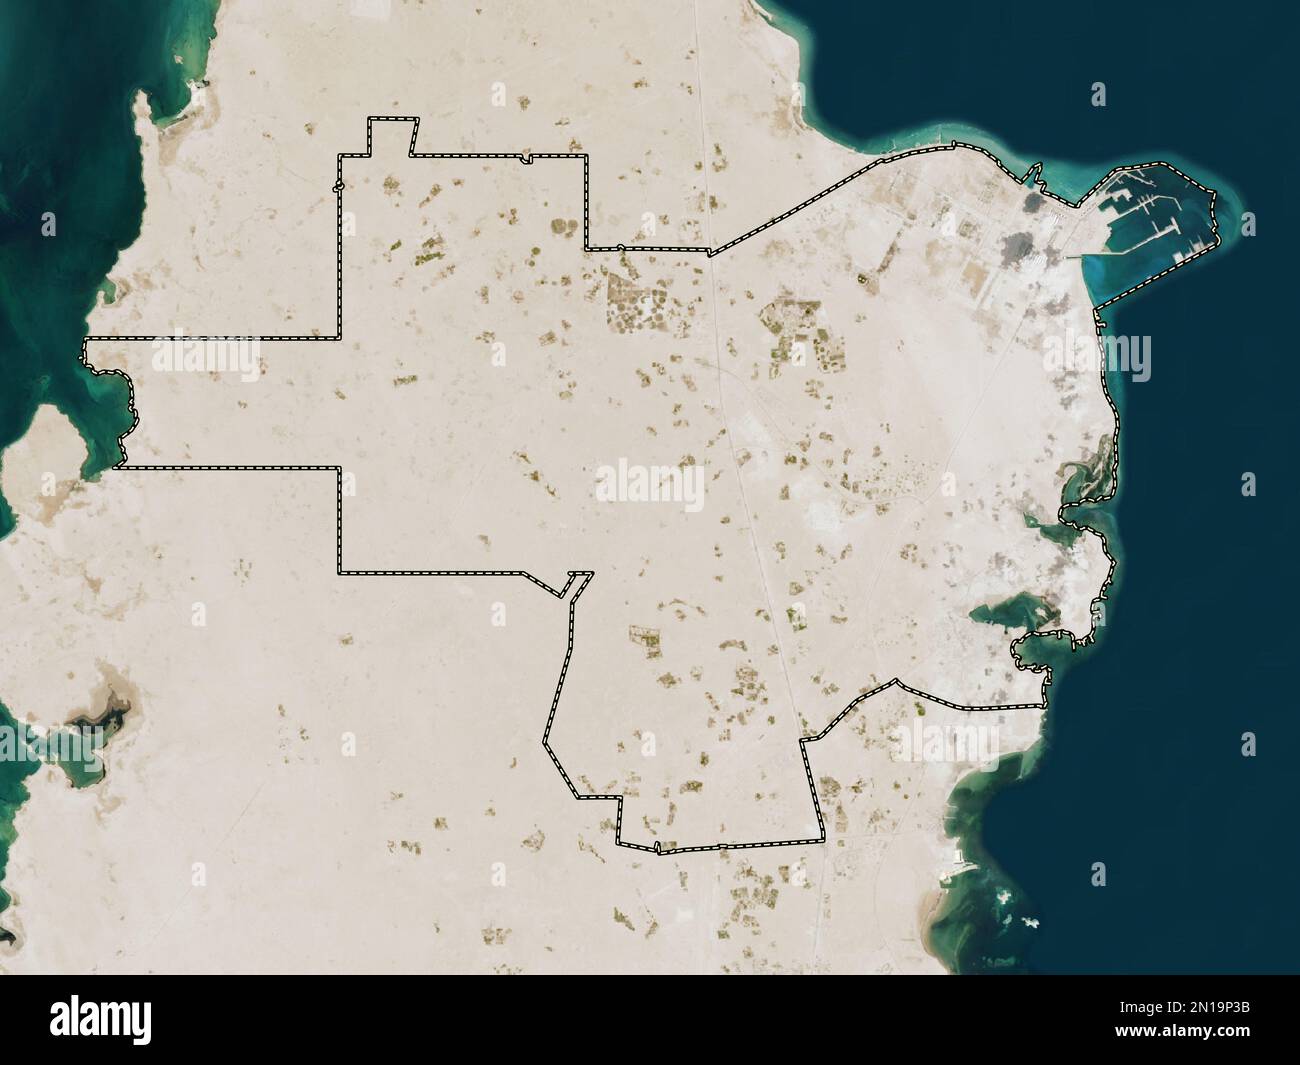 Al Khor, comune del Qatar. Mappa satellitare a bassa risoluzione Foto Stock